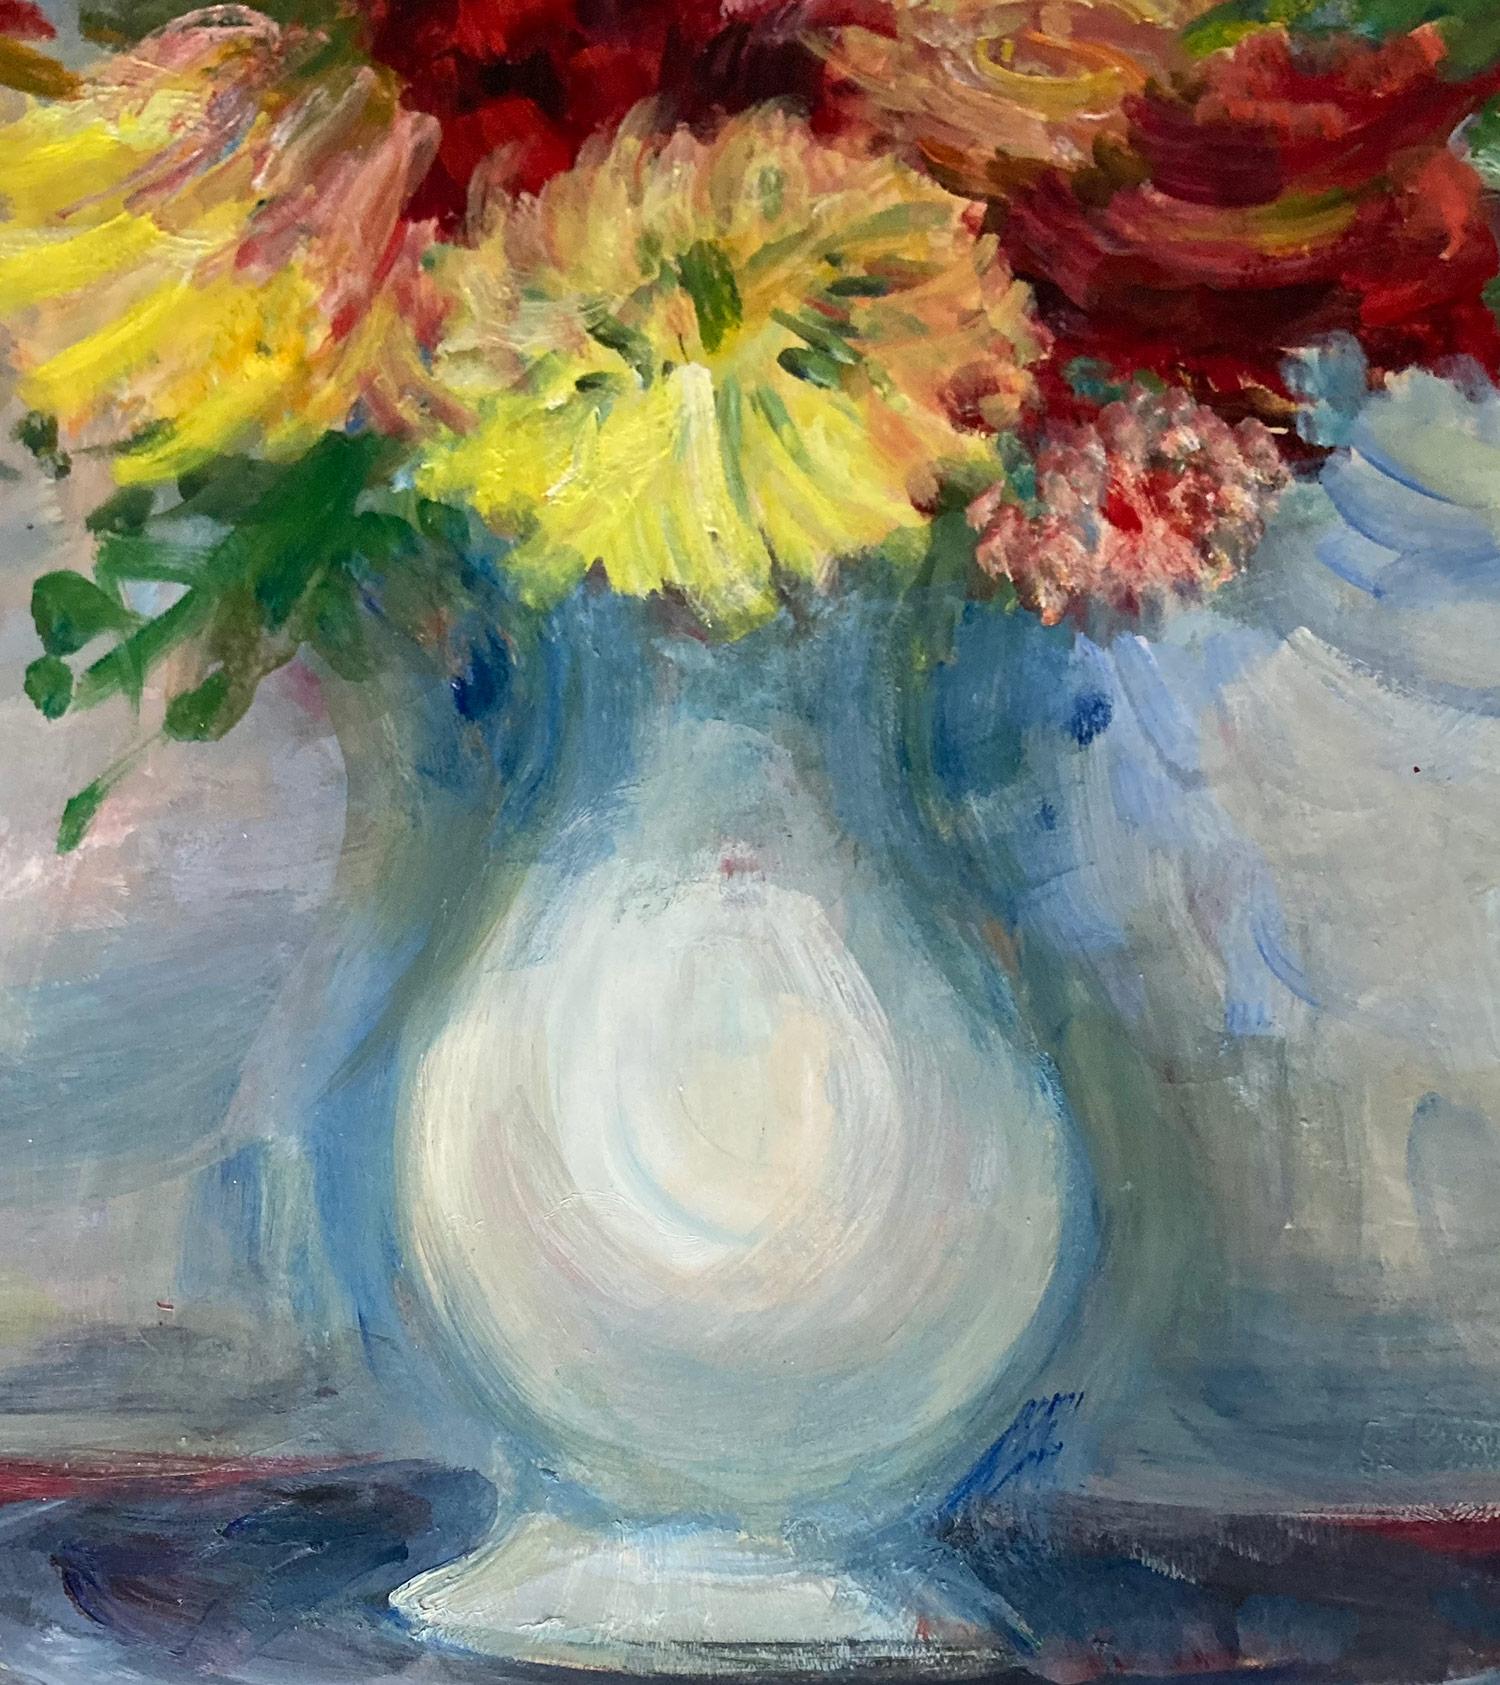 Une charmante peinture à l'huile sur papier représentant une nature morte florale colorée dans un vase blanc sur une table en bois. Les fleurs représentées sont un bouquet lumineux d'œillets, de marguerites, de verdure et de roses rouges.  Les